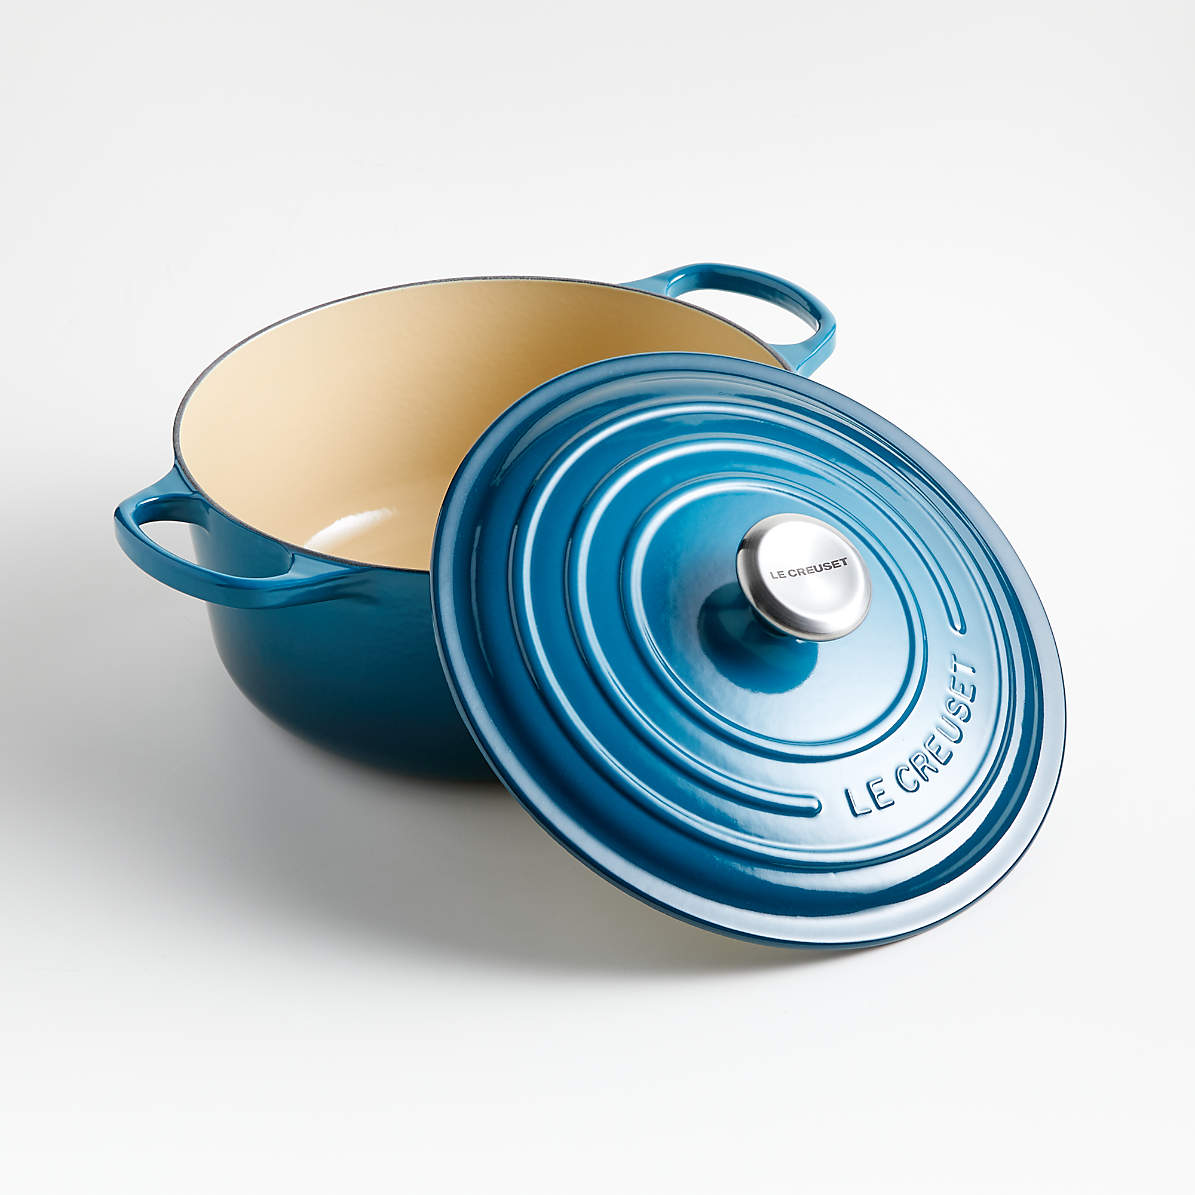 Le Creuset Signature Round Dutch Oven, 5.5 Qt. Azure Blue Color